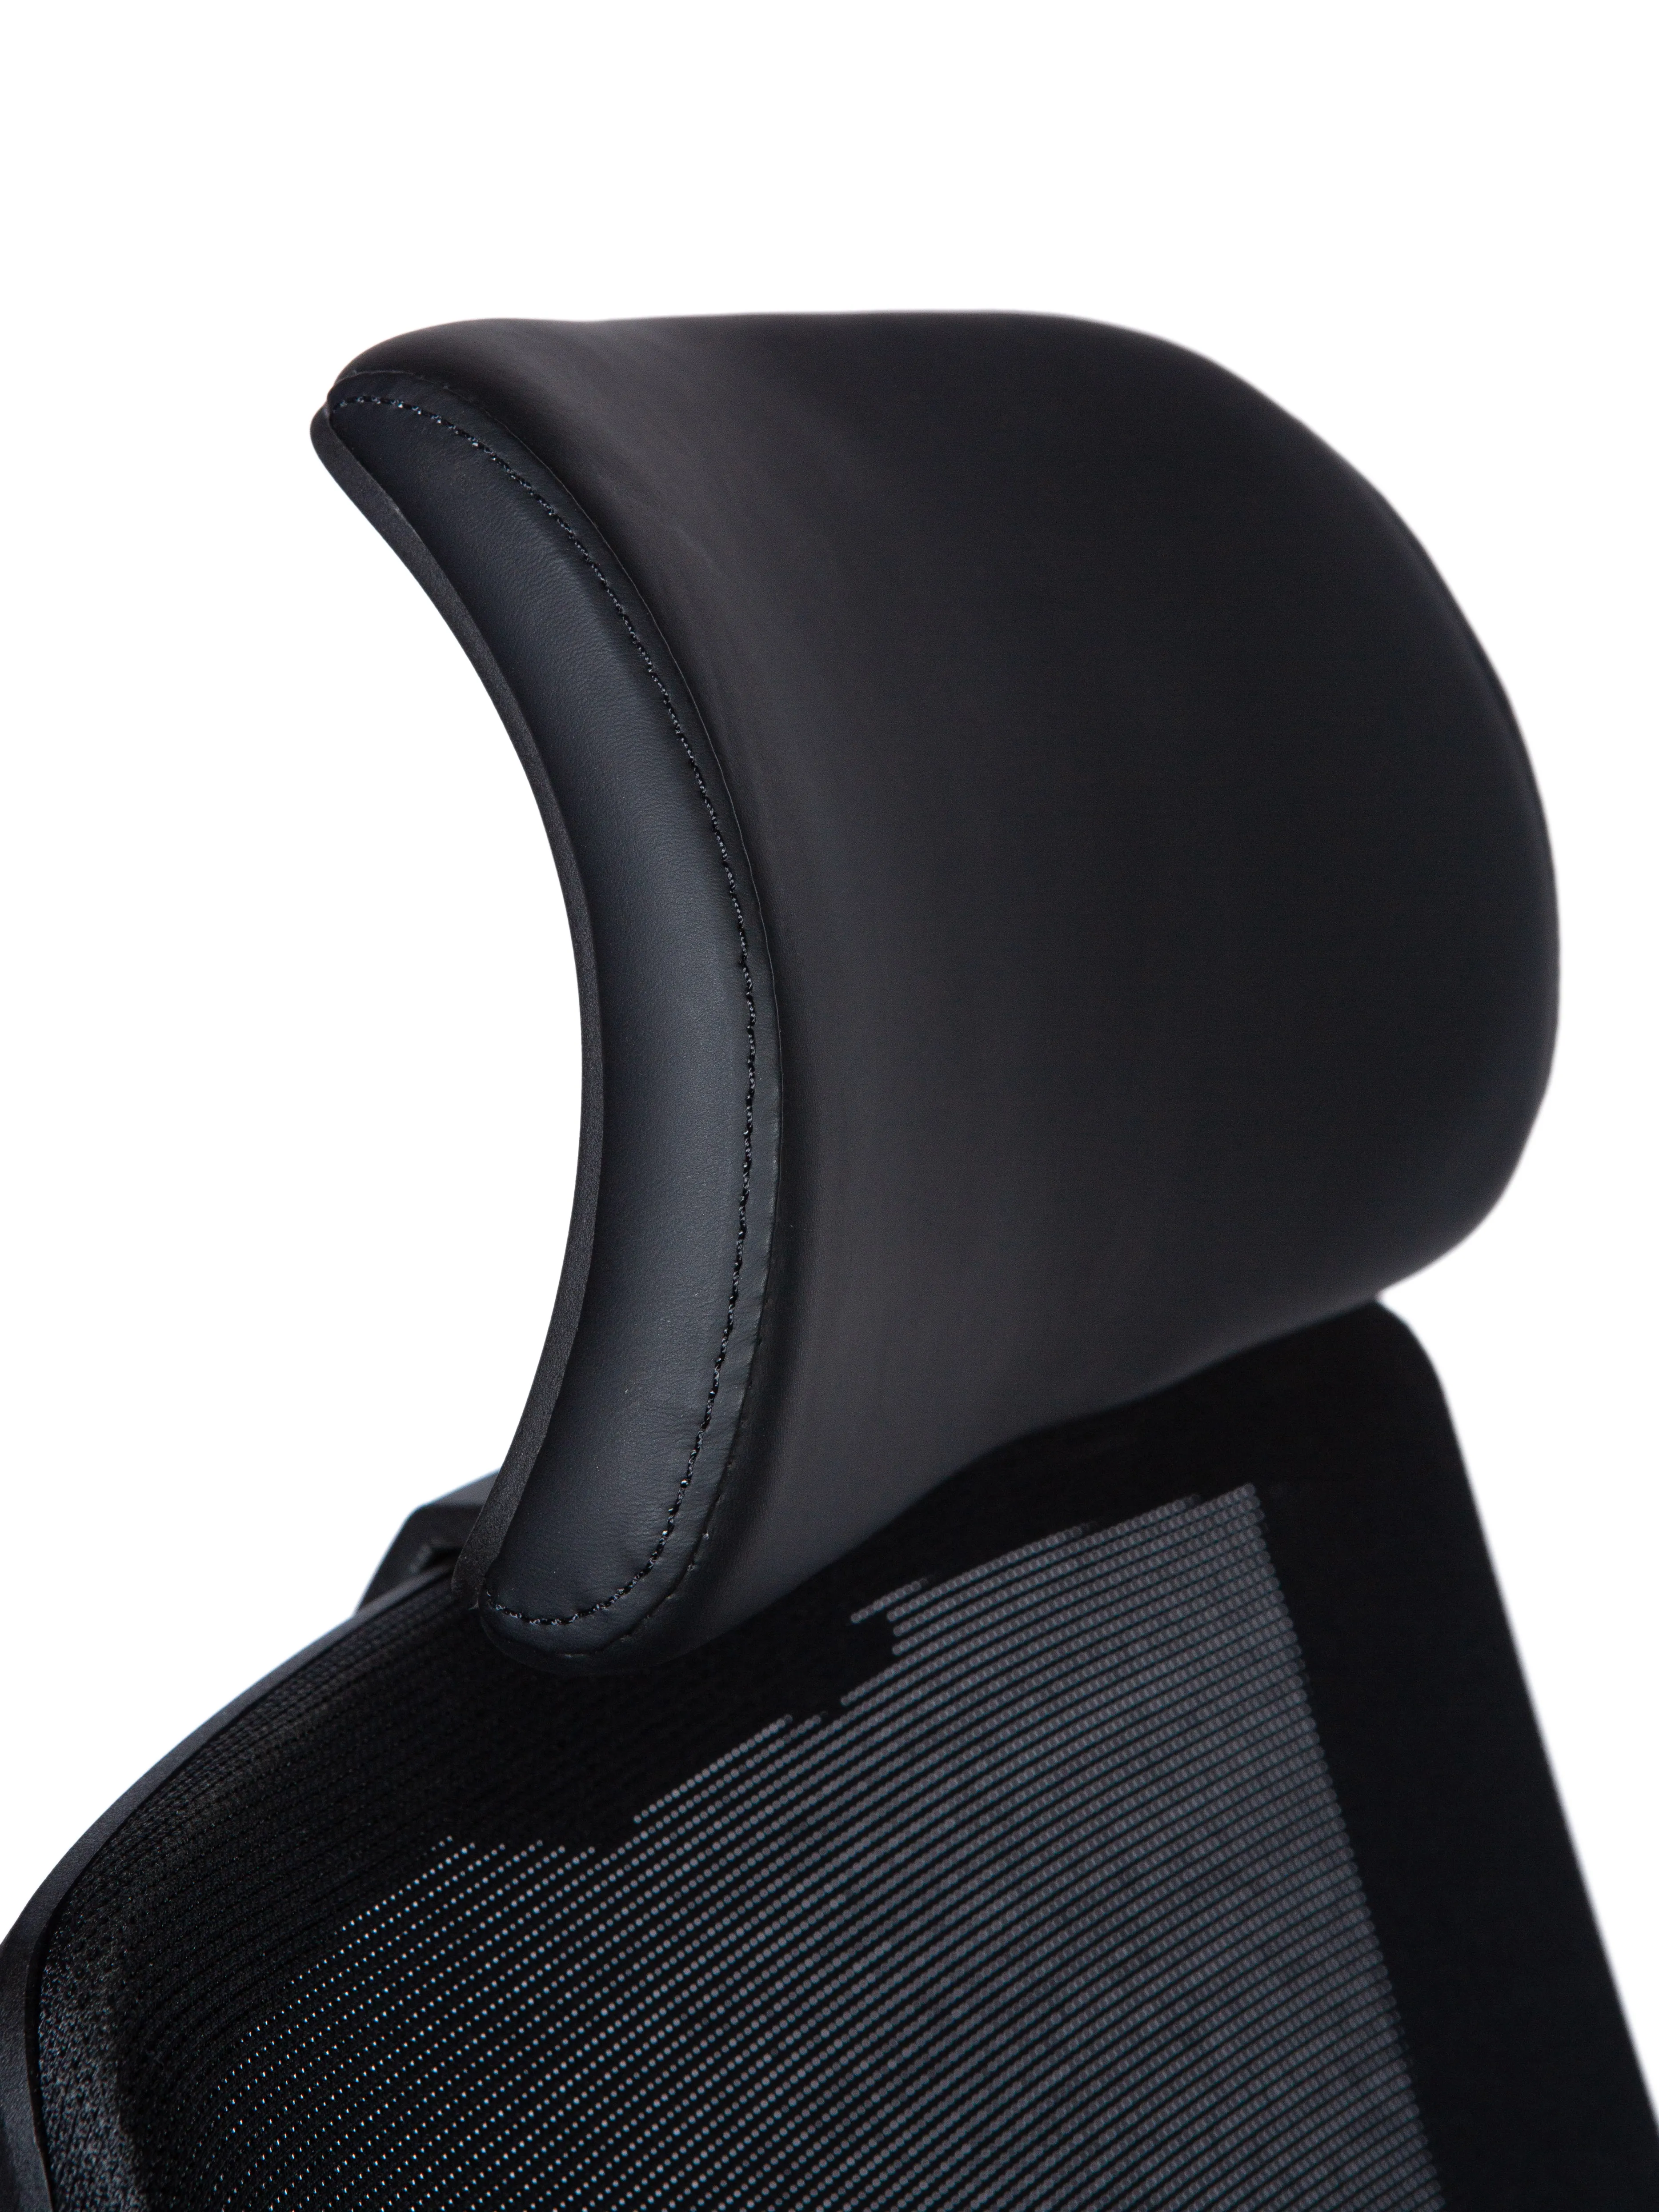 Кресло эргономичное NORDEN Mono black черный пластик H6255 black